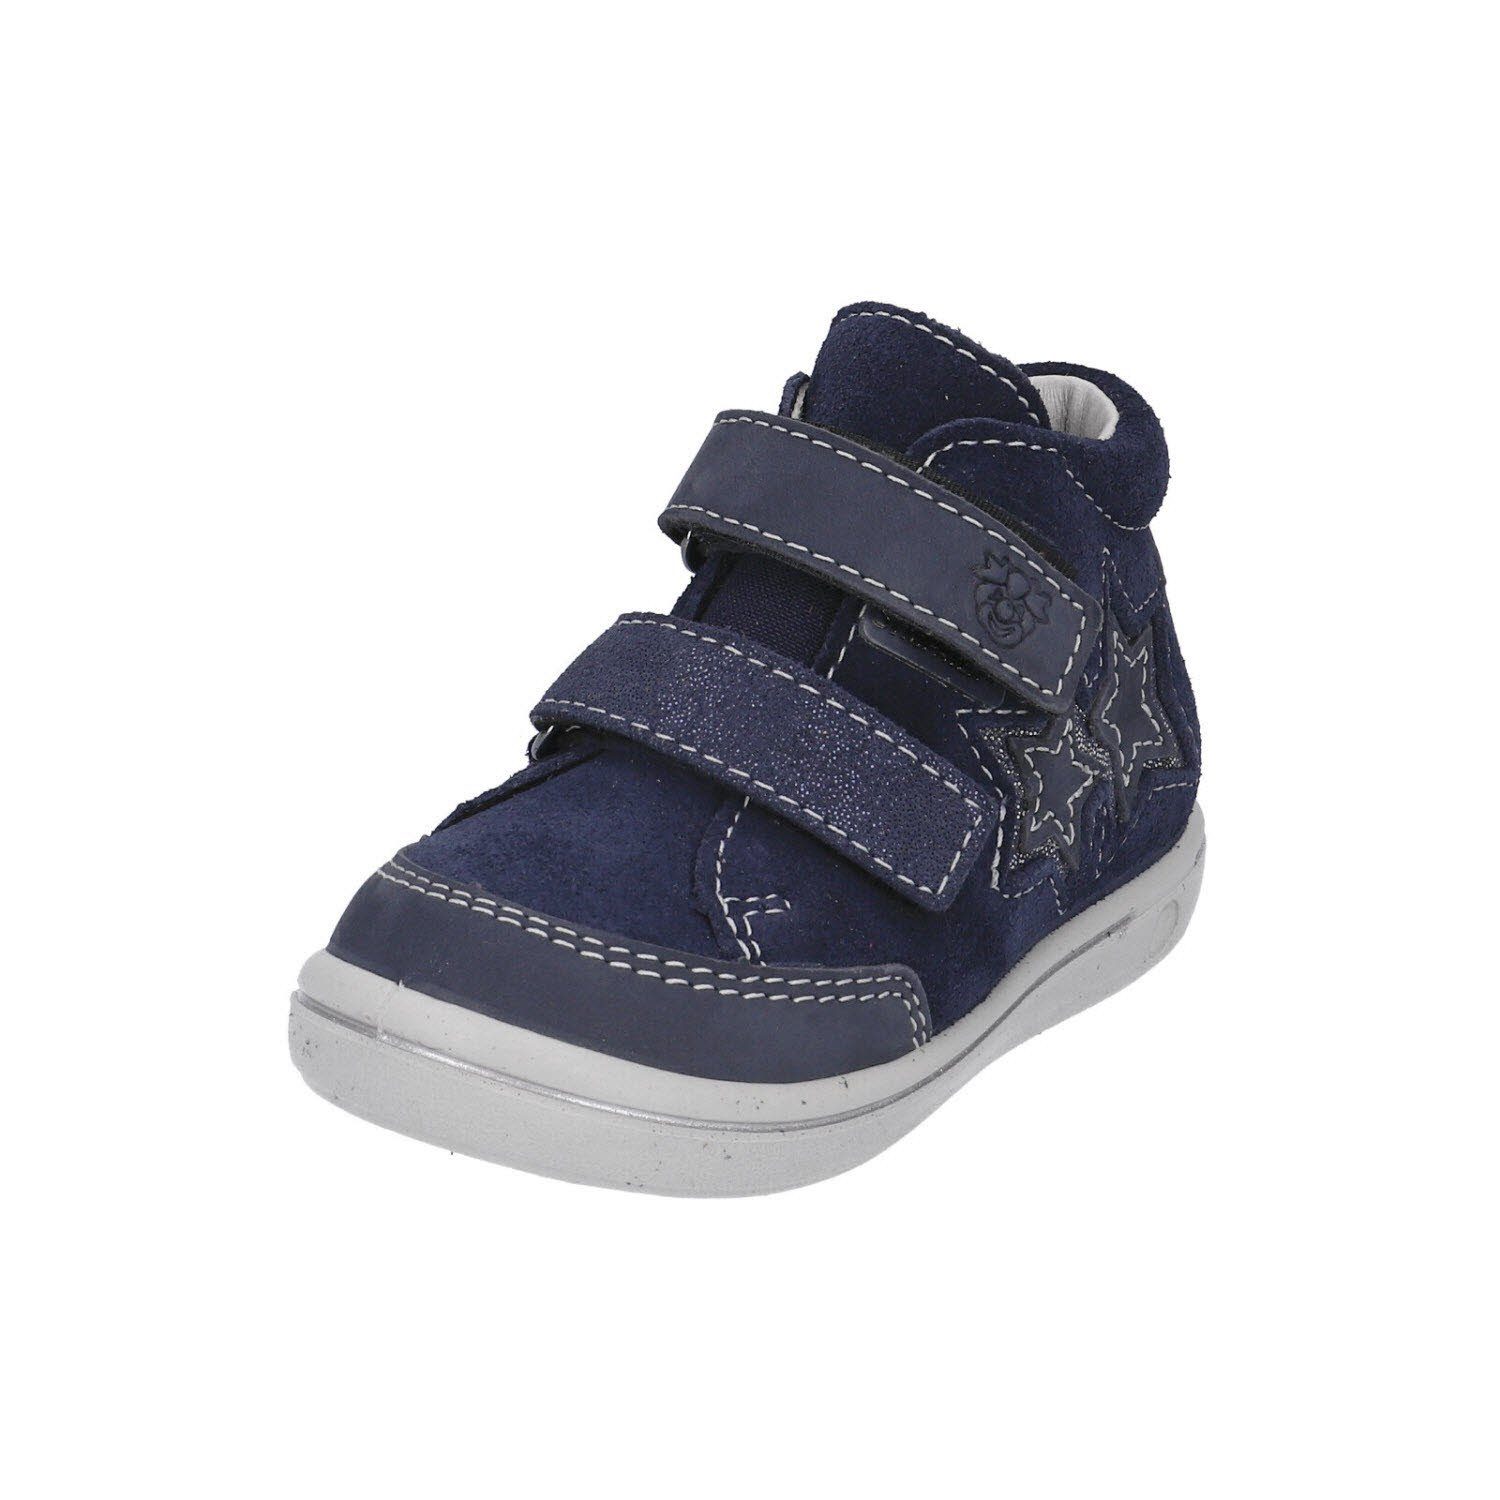 Ricosta »Schuhe Kinderschuhe Klettschuhe« Klettschuh online kaufen | OTTO